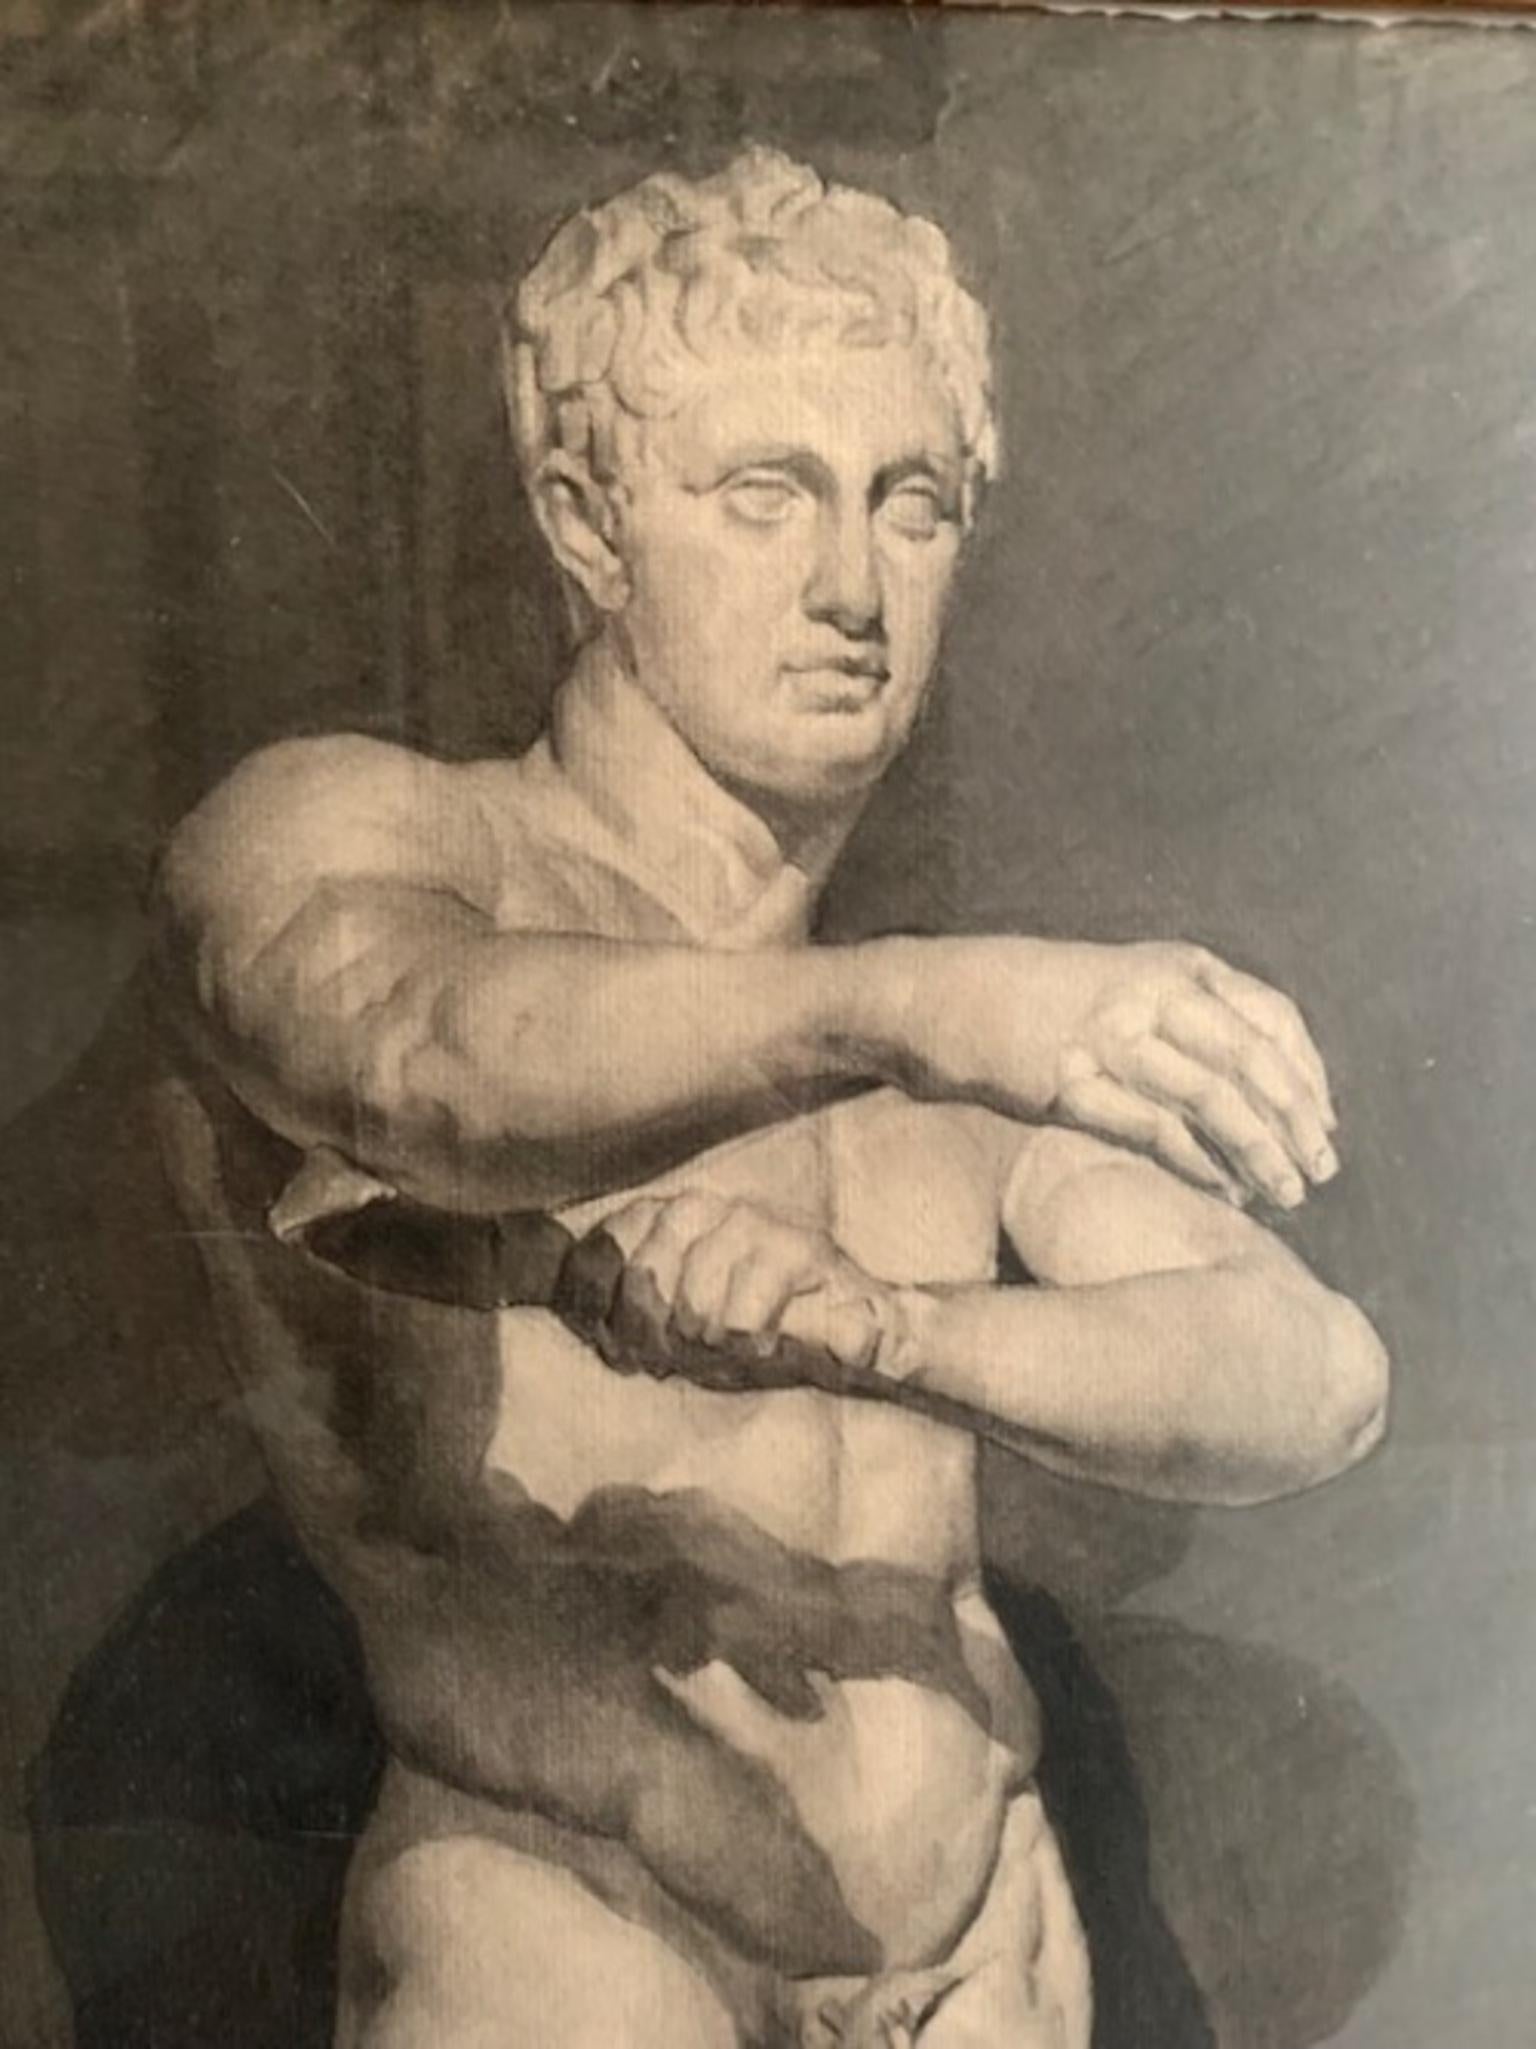 Dessin Académie de sculpture grecque réalisé au fusain au début du XXe siècle, à l'Académie espagnole de Rome. Représentant une sculpture grecque.